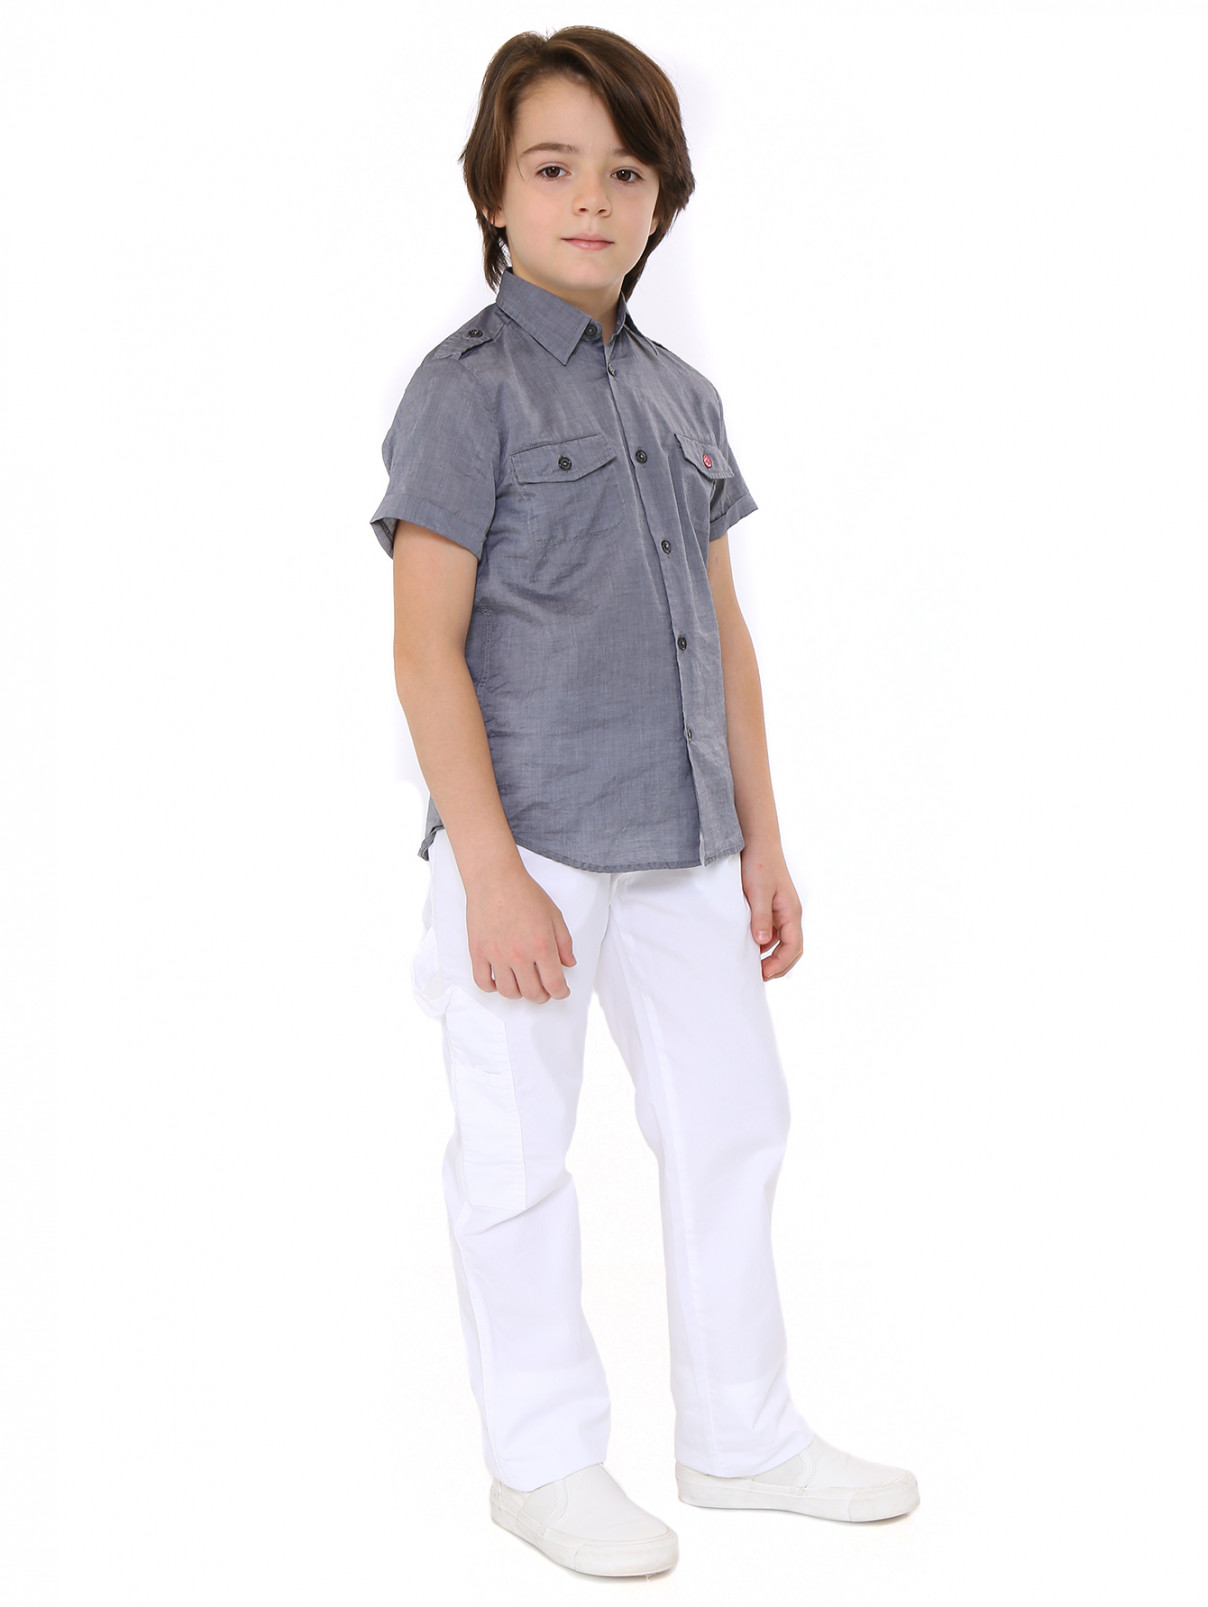 Рубашка из хлопка с короткими рукавами MiMiSol  –  Модель Общий вид  – Цвет:  Серый